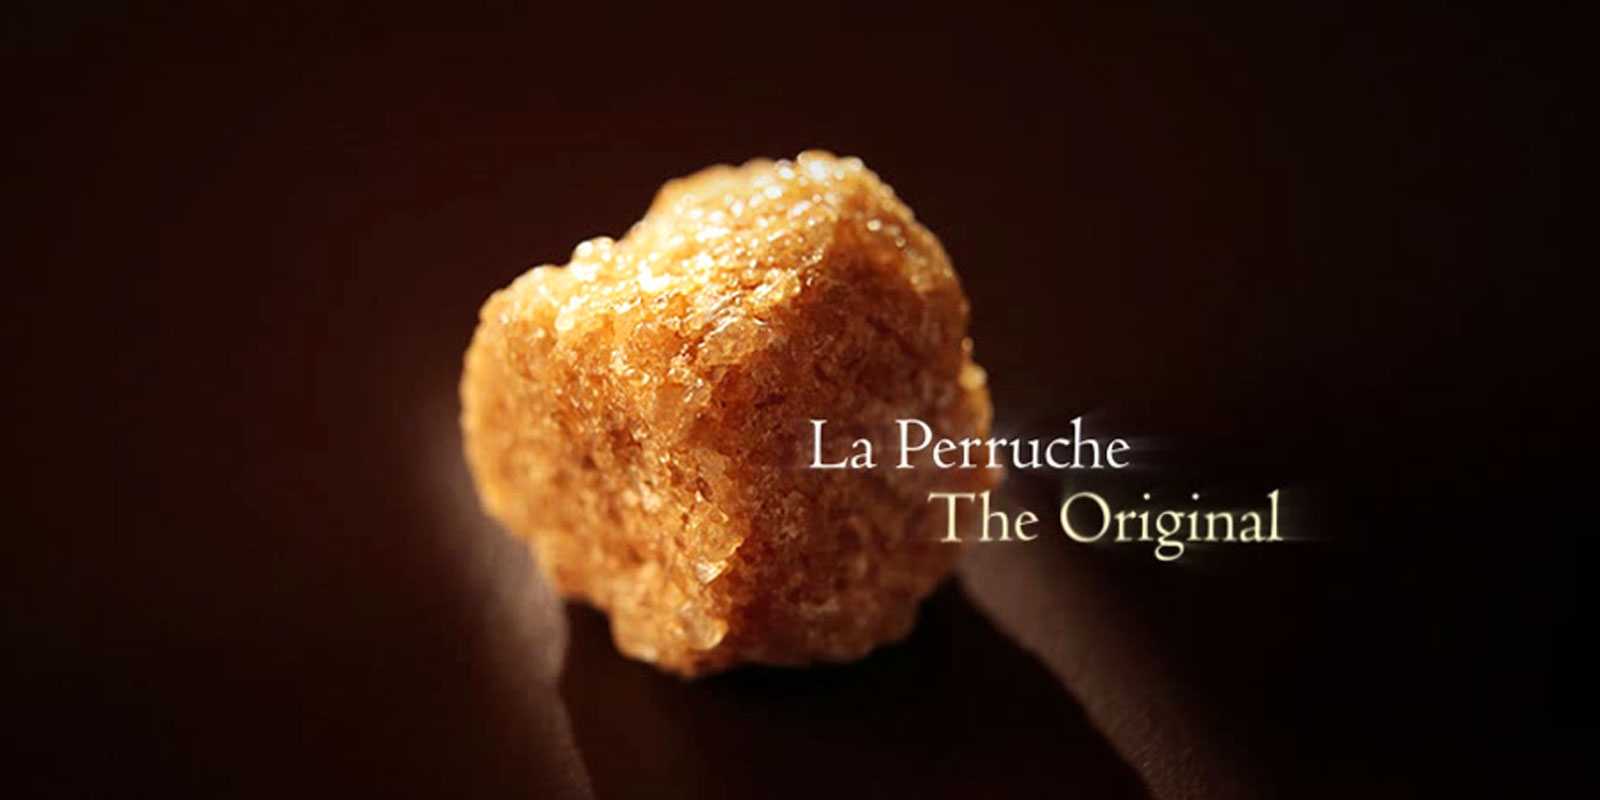 La Perruche - secer od trske La Perruche je izuzetan proizvod, posebnog okusa koji ce oduseviti sve one koji cijene fini i sofisticirani okus. Naprosto, u vasa osjetila docarava cisti uzitak. La Perruche dolazi u nepravilnim secernim grudicama bijele ili zlatno smede boje. Oblik kristala u shakeru takoder poznat kao cassonade.